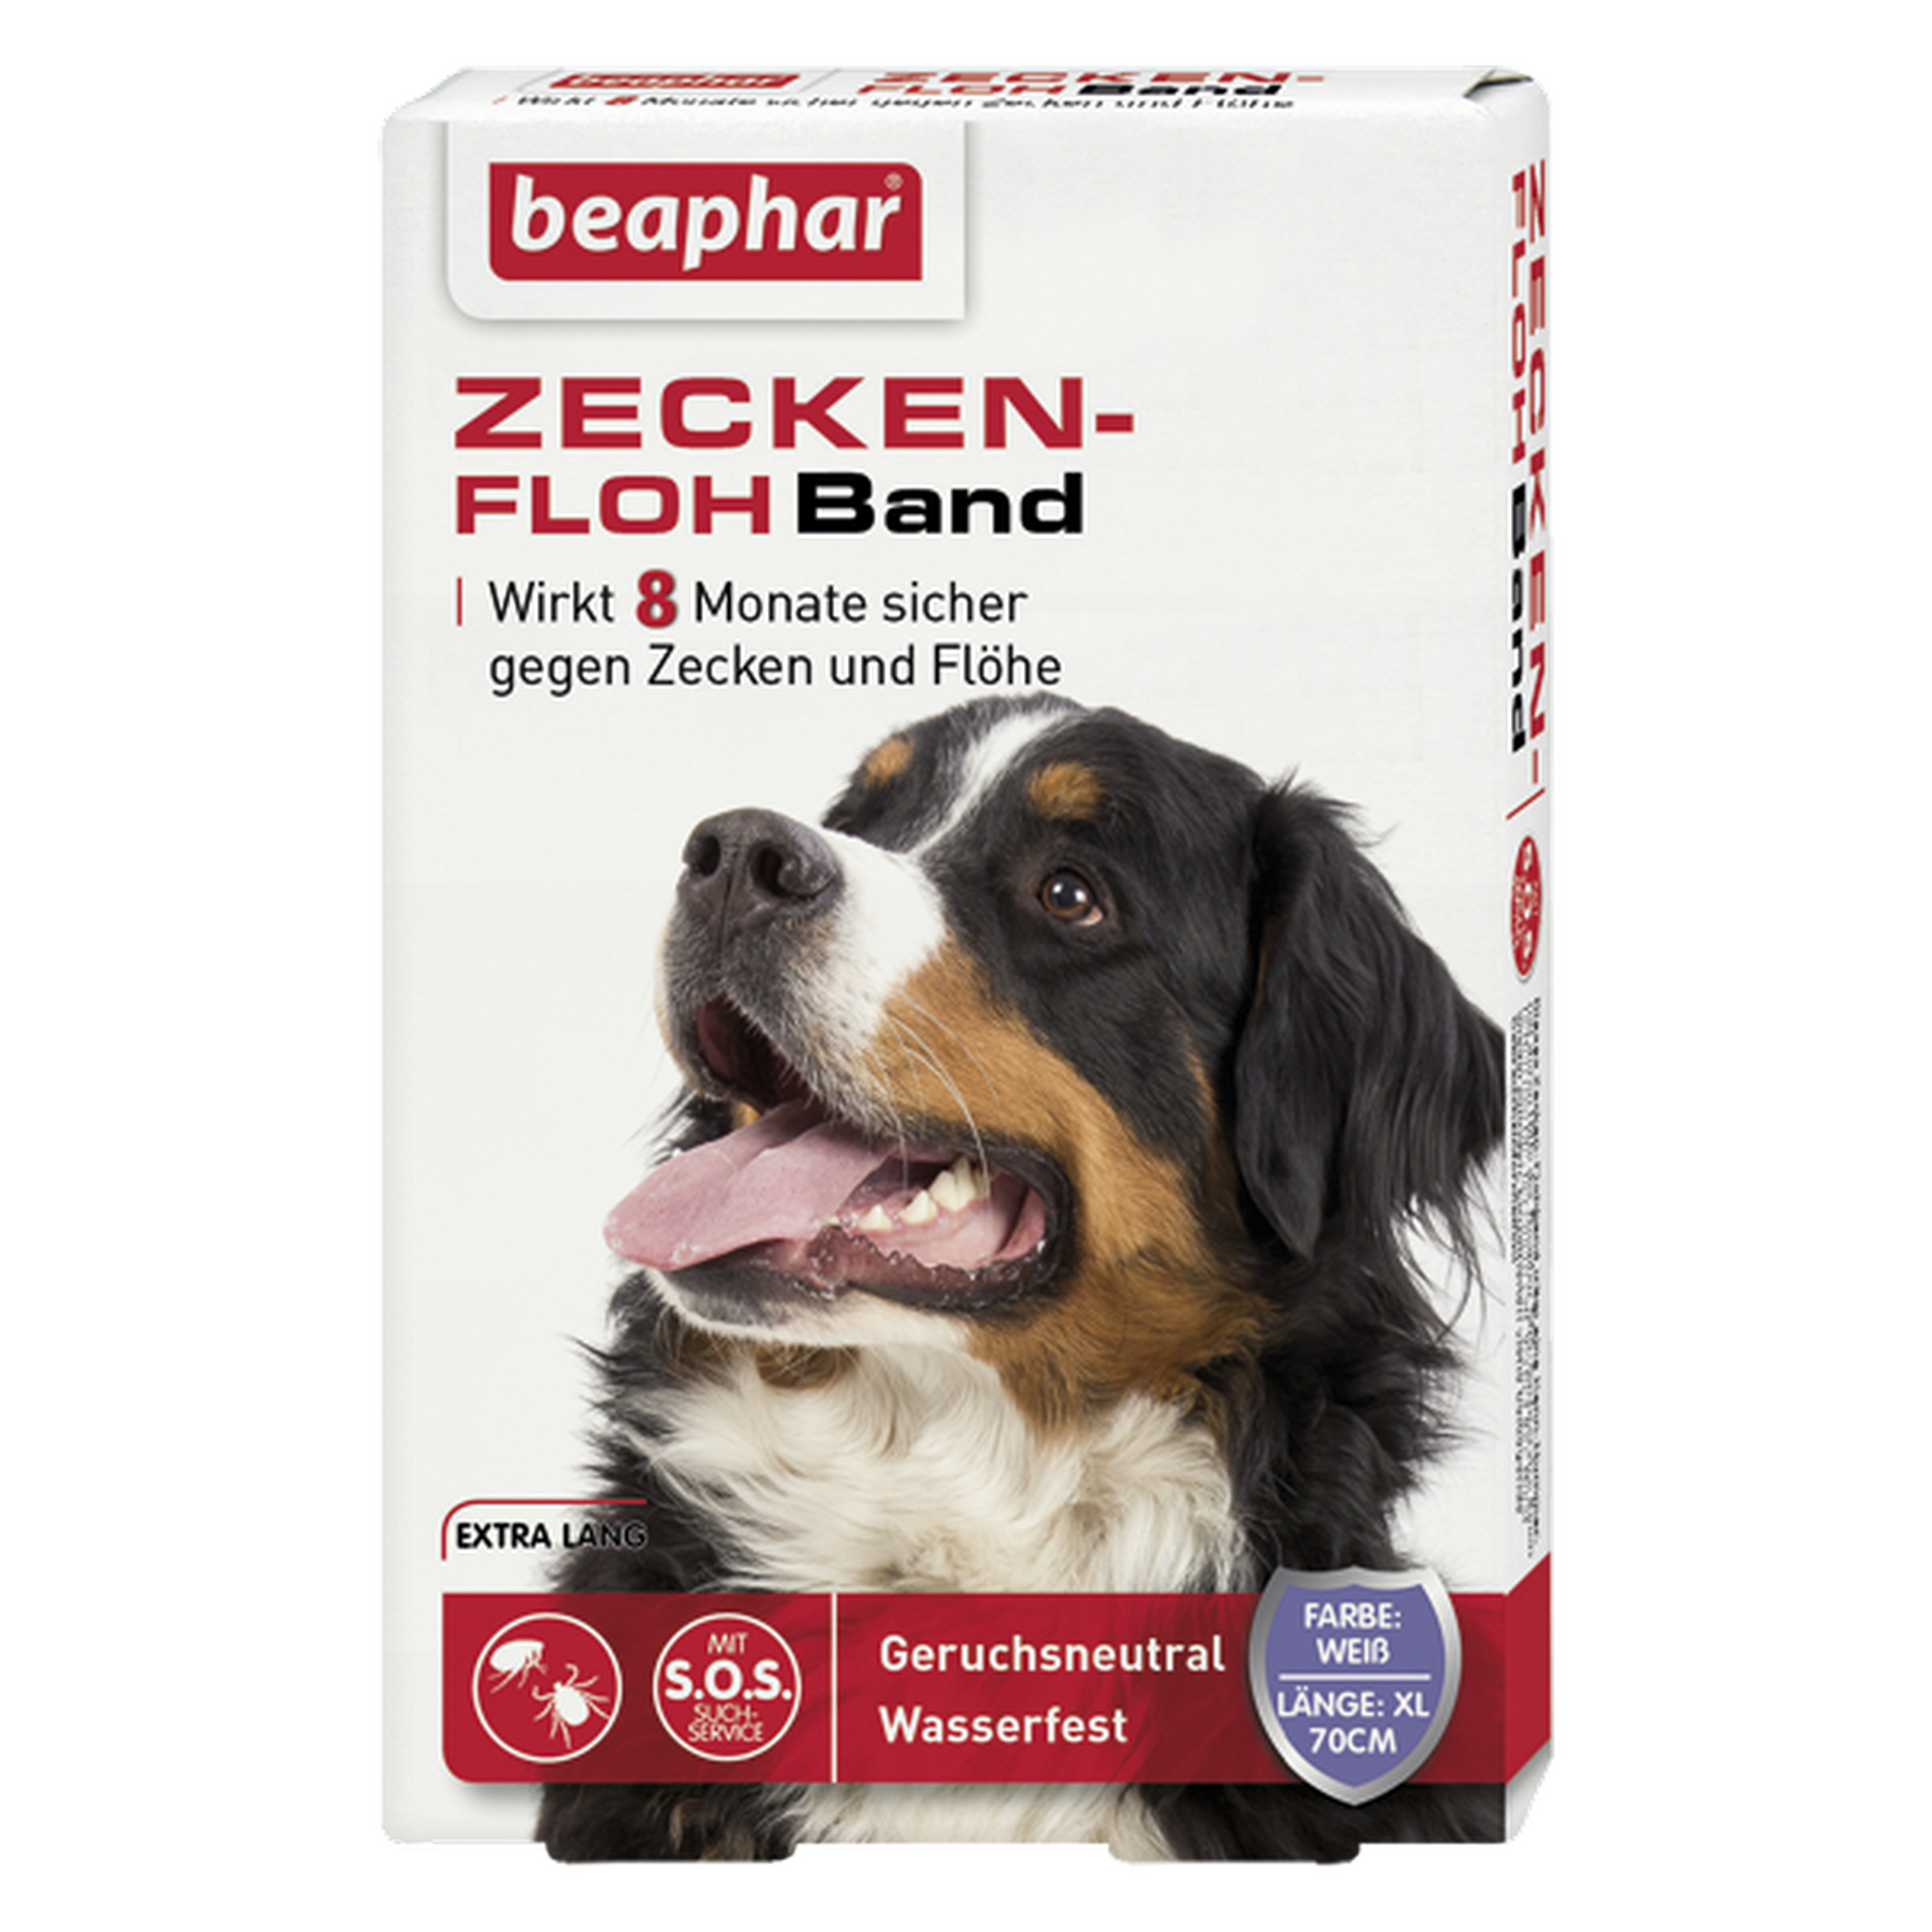 Zecken- und Flohband für Hunde 70 cm + product picture